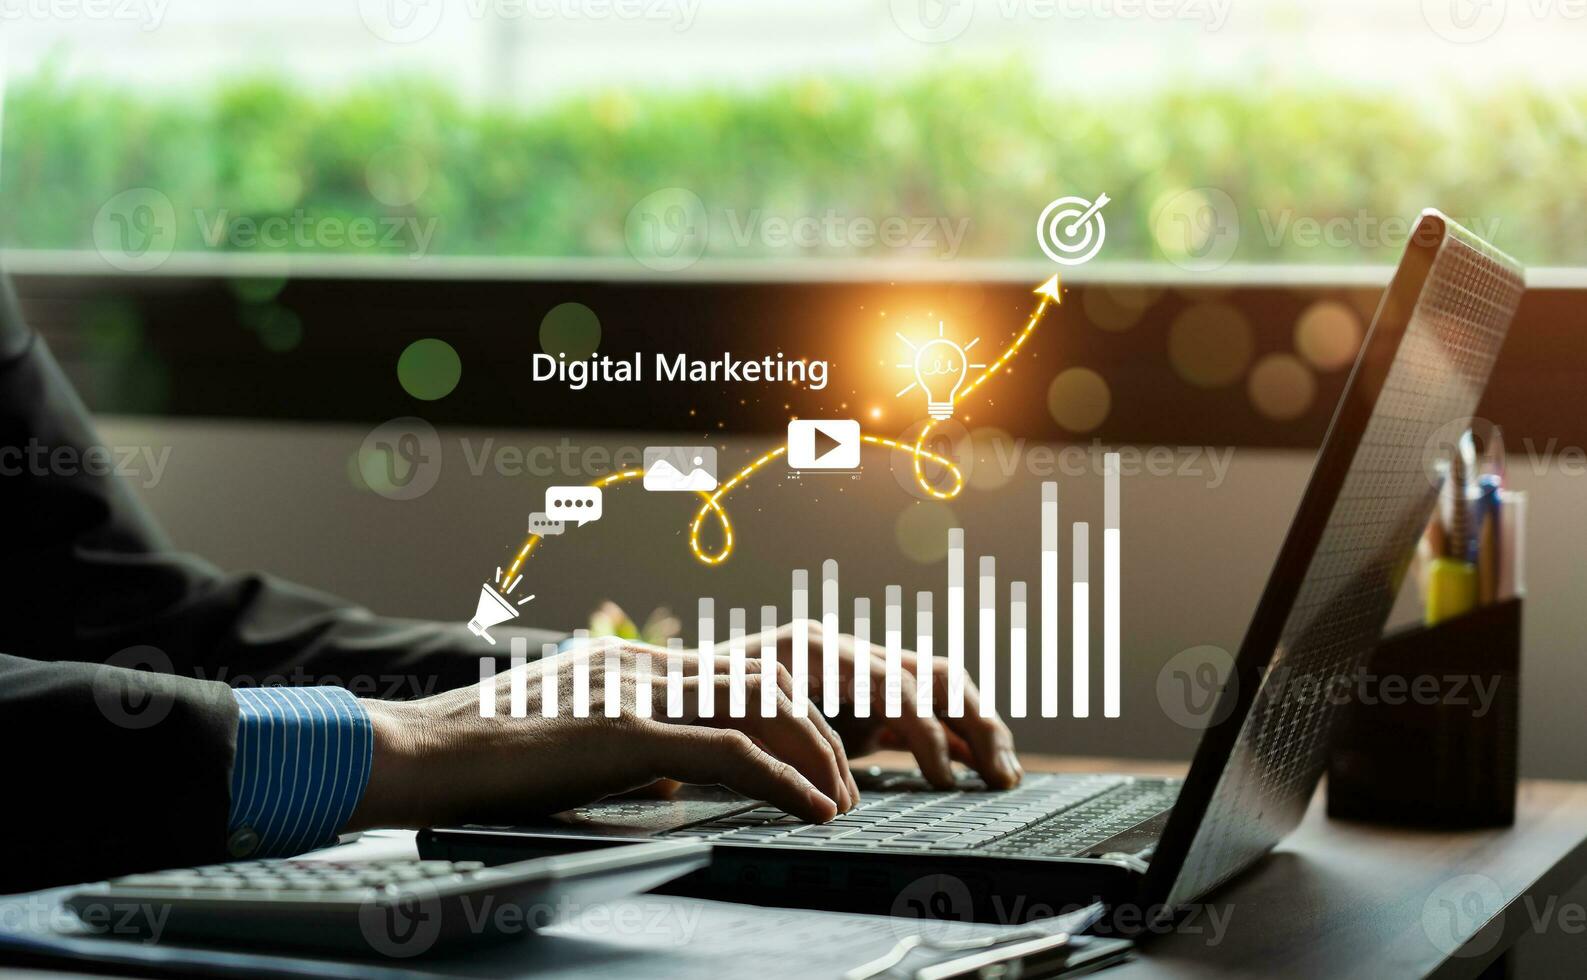 digitale marketing commercio in linea vendita concetto, promozione di prodotti o Servizi attraverso digitale canali ricerca motore, sociale media, e-mail, sito web, digitale marketing strategie e obiettivi. SEO ppc foto